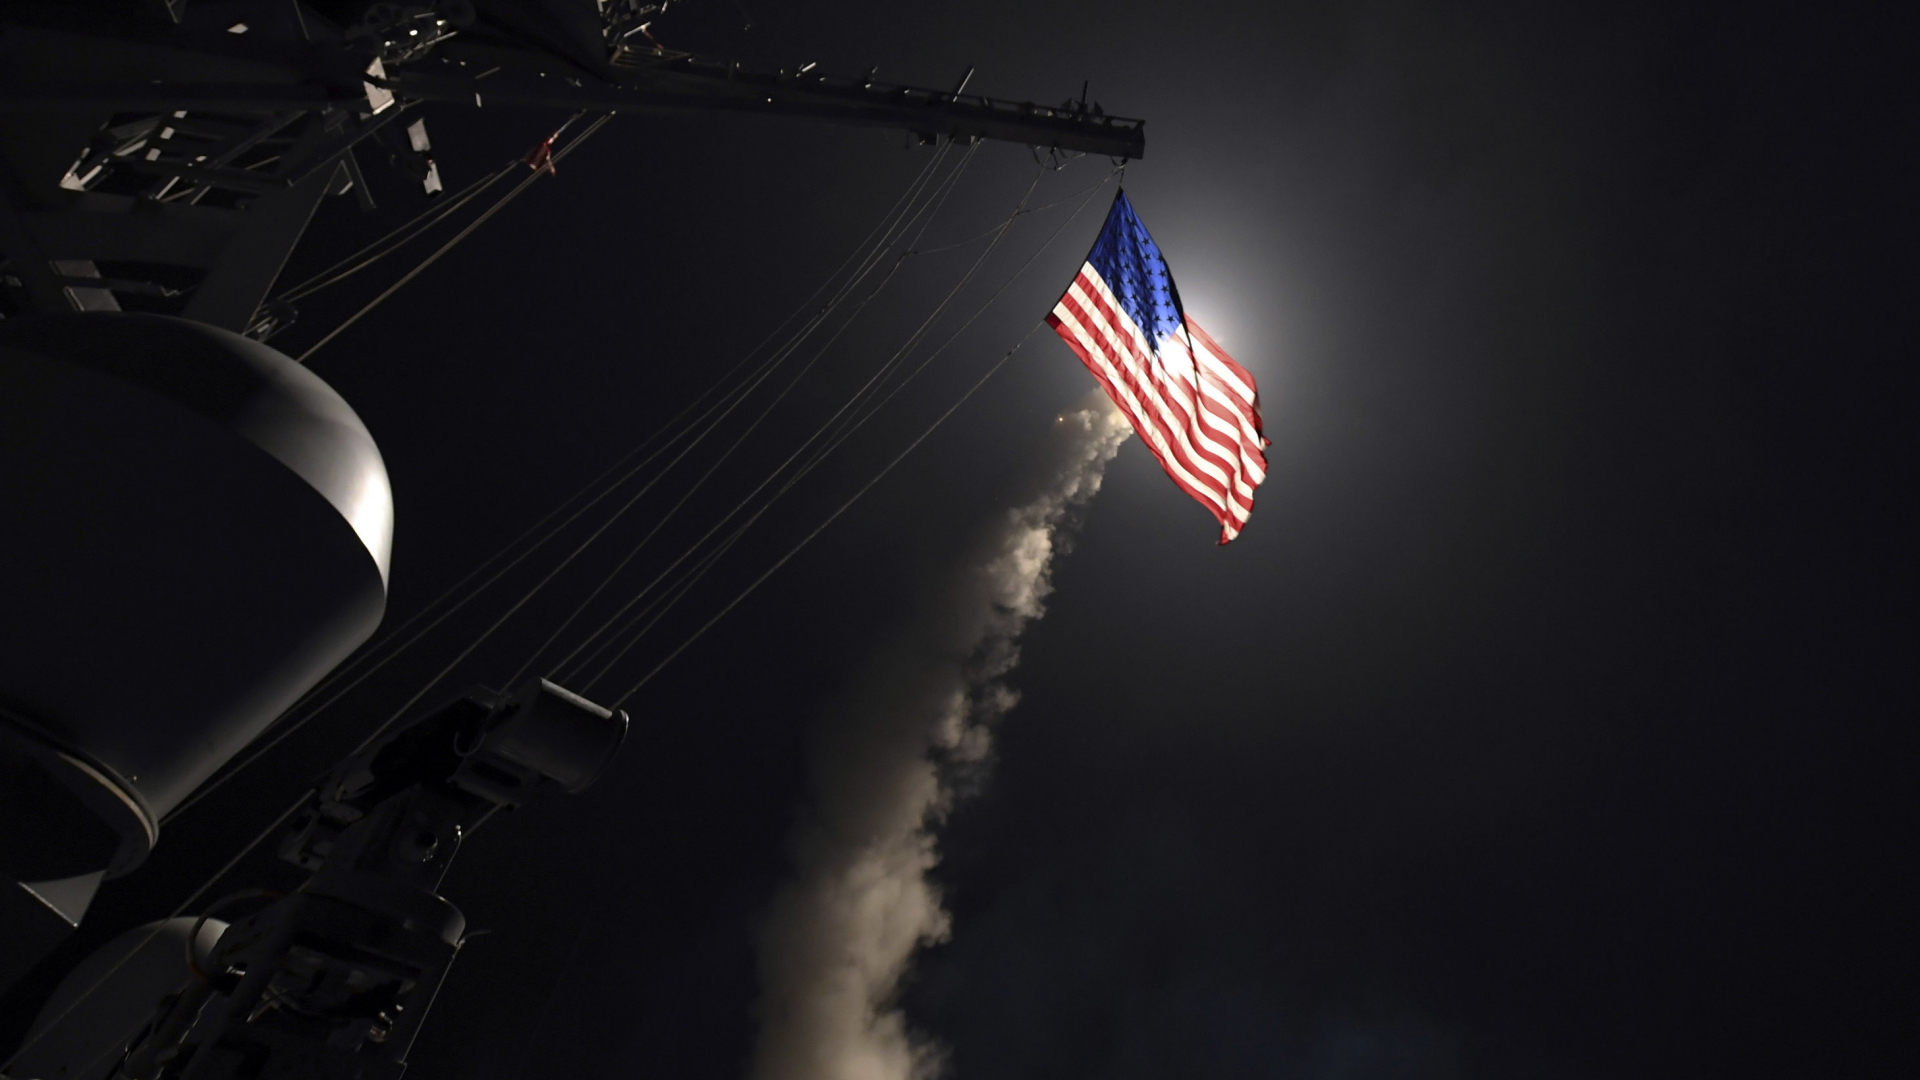 US-Zerstörer während eine Rakete abgefeuert wird